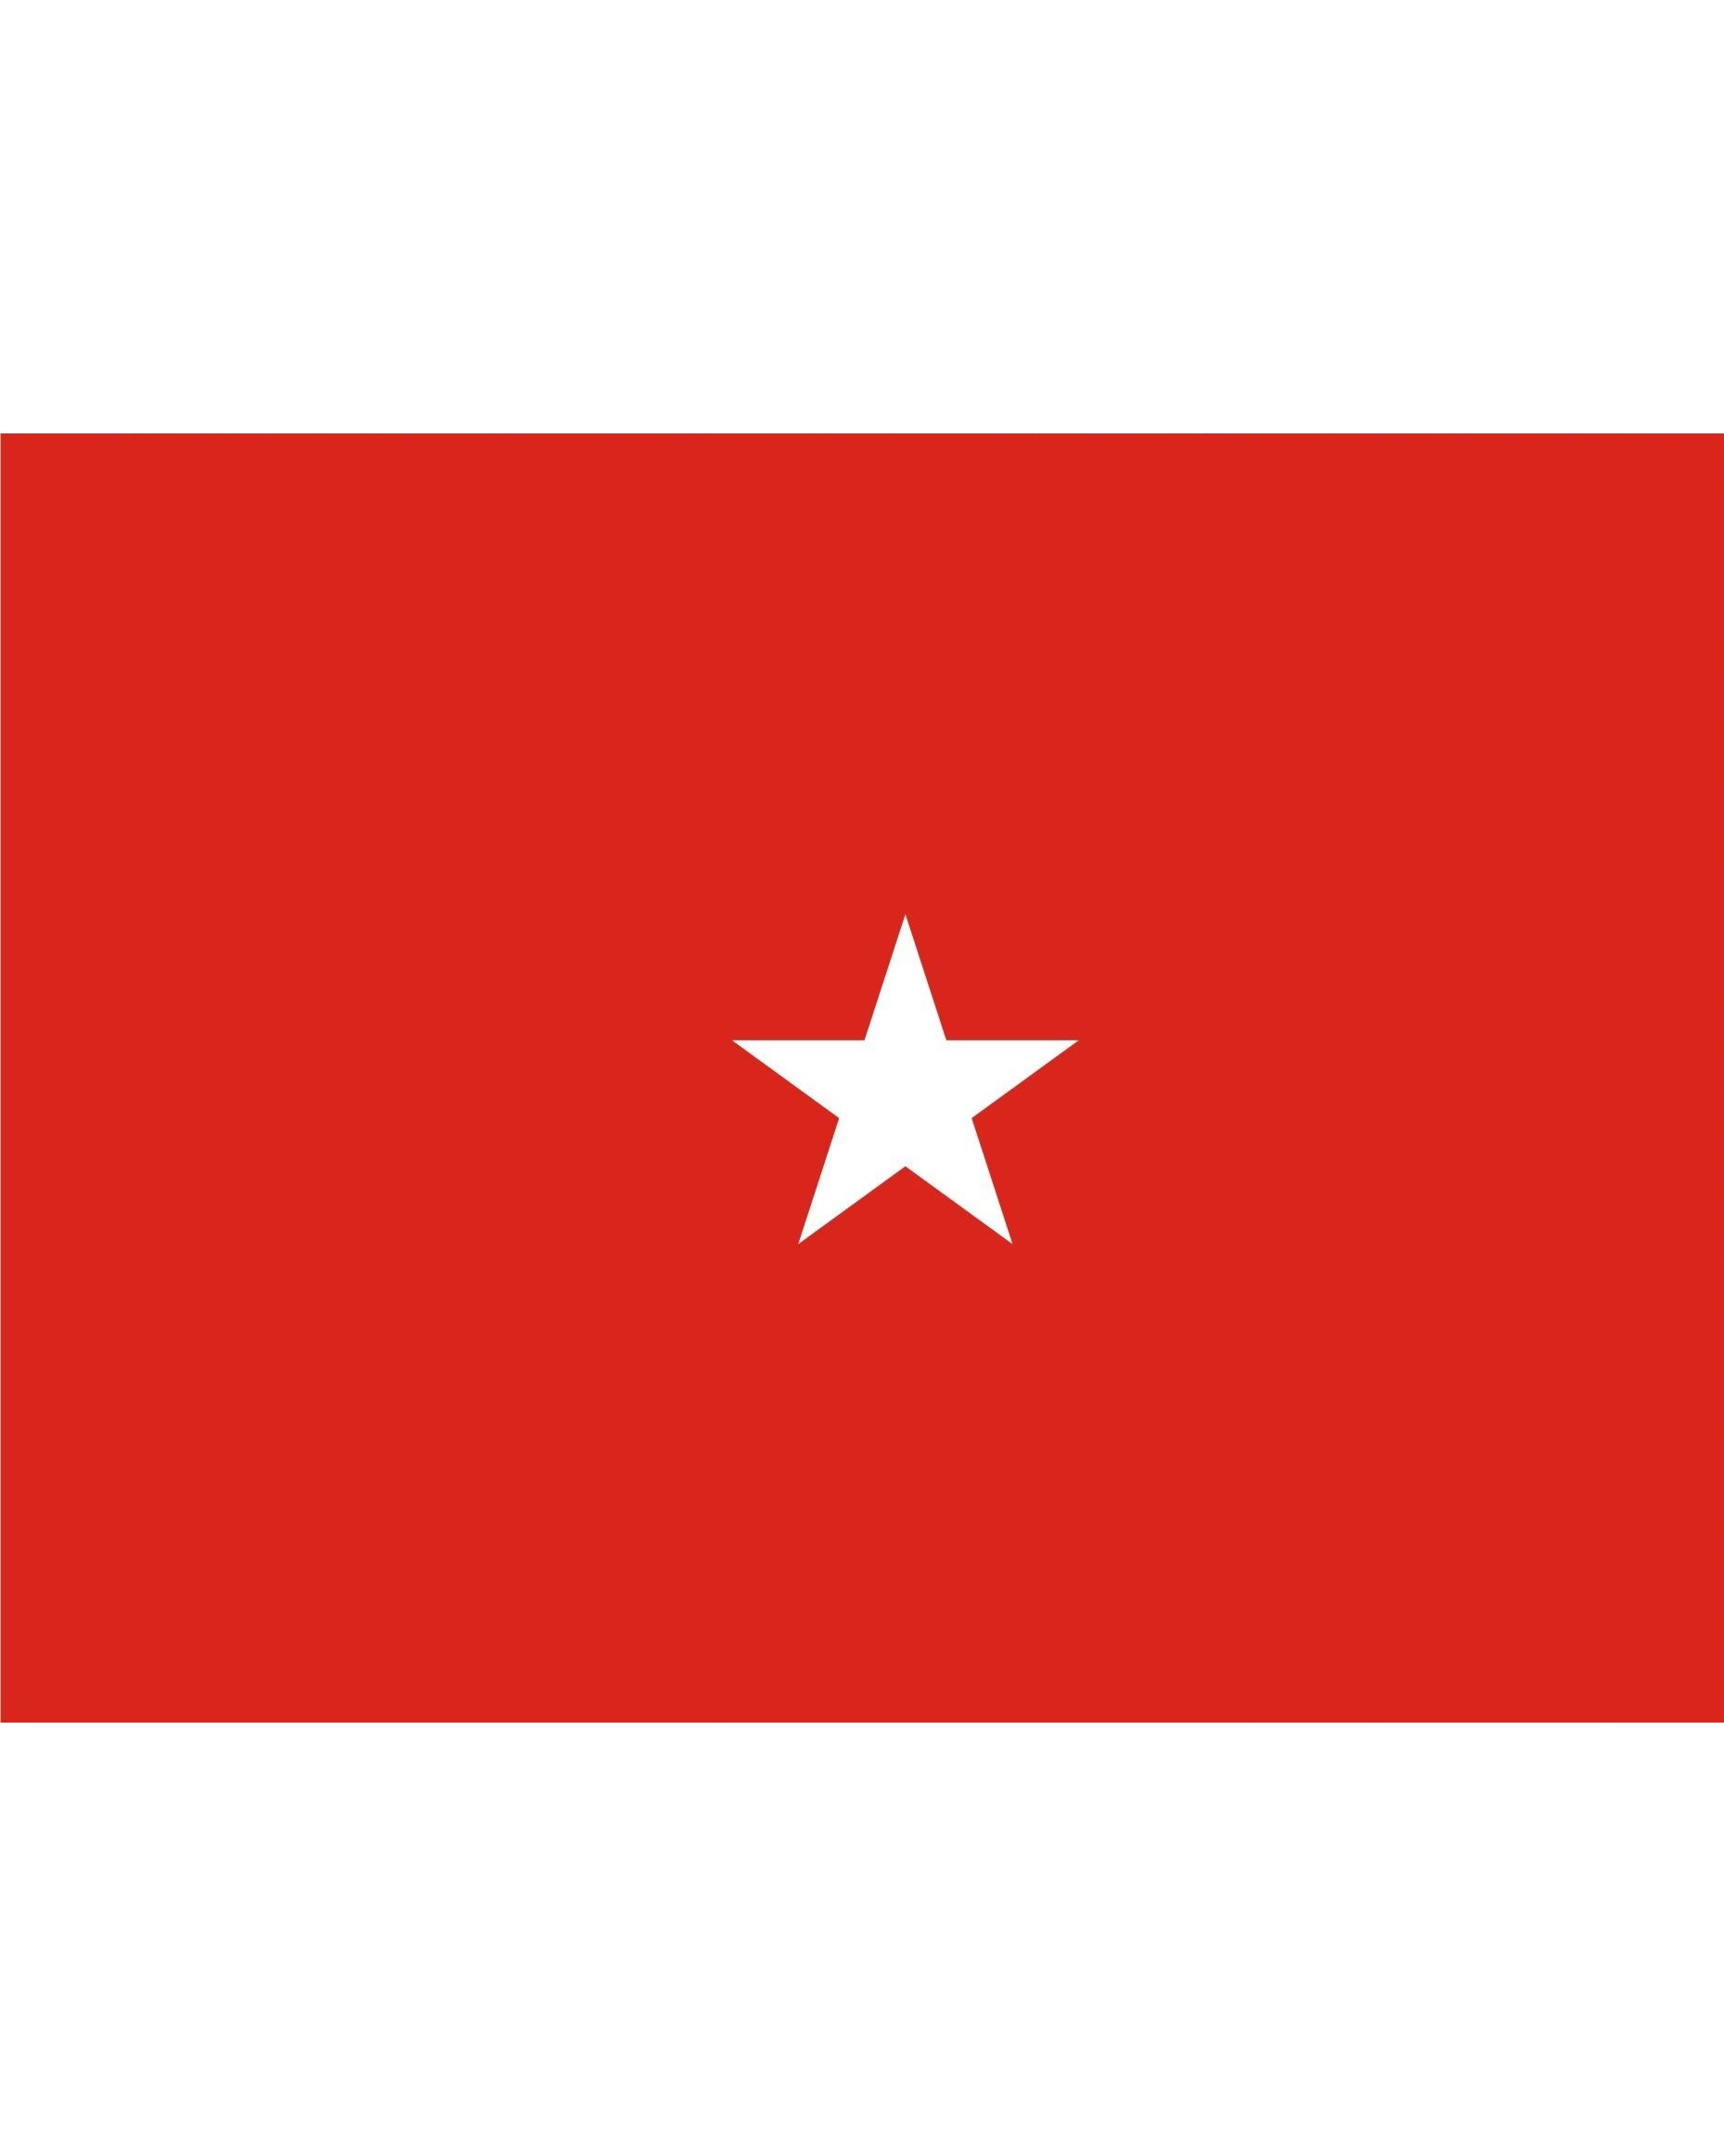 flag 1 star red white blue